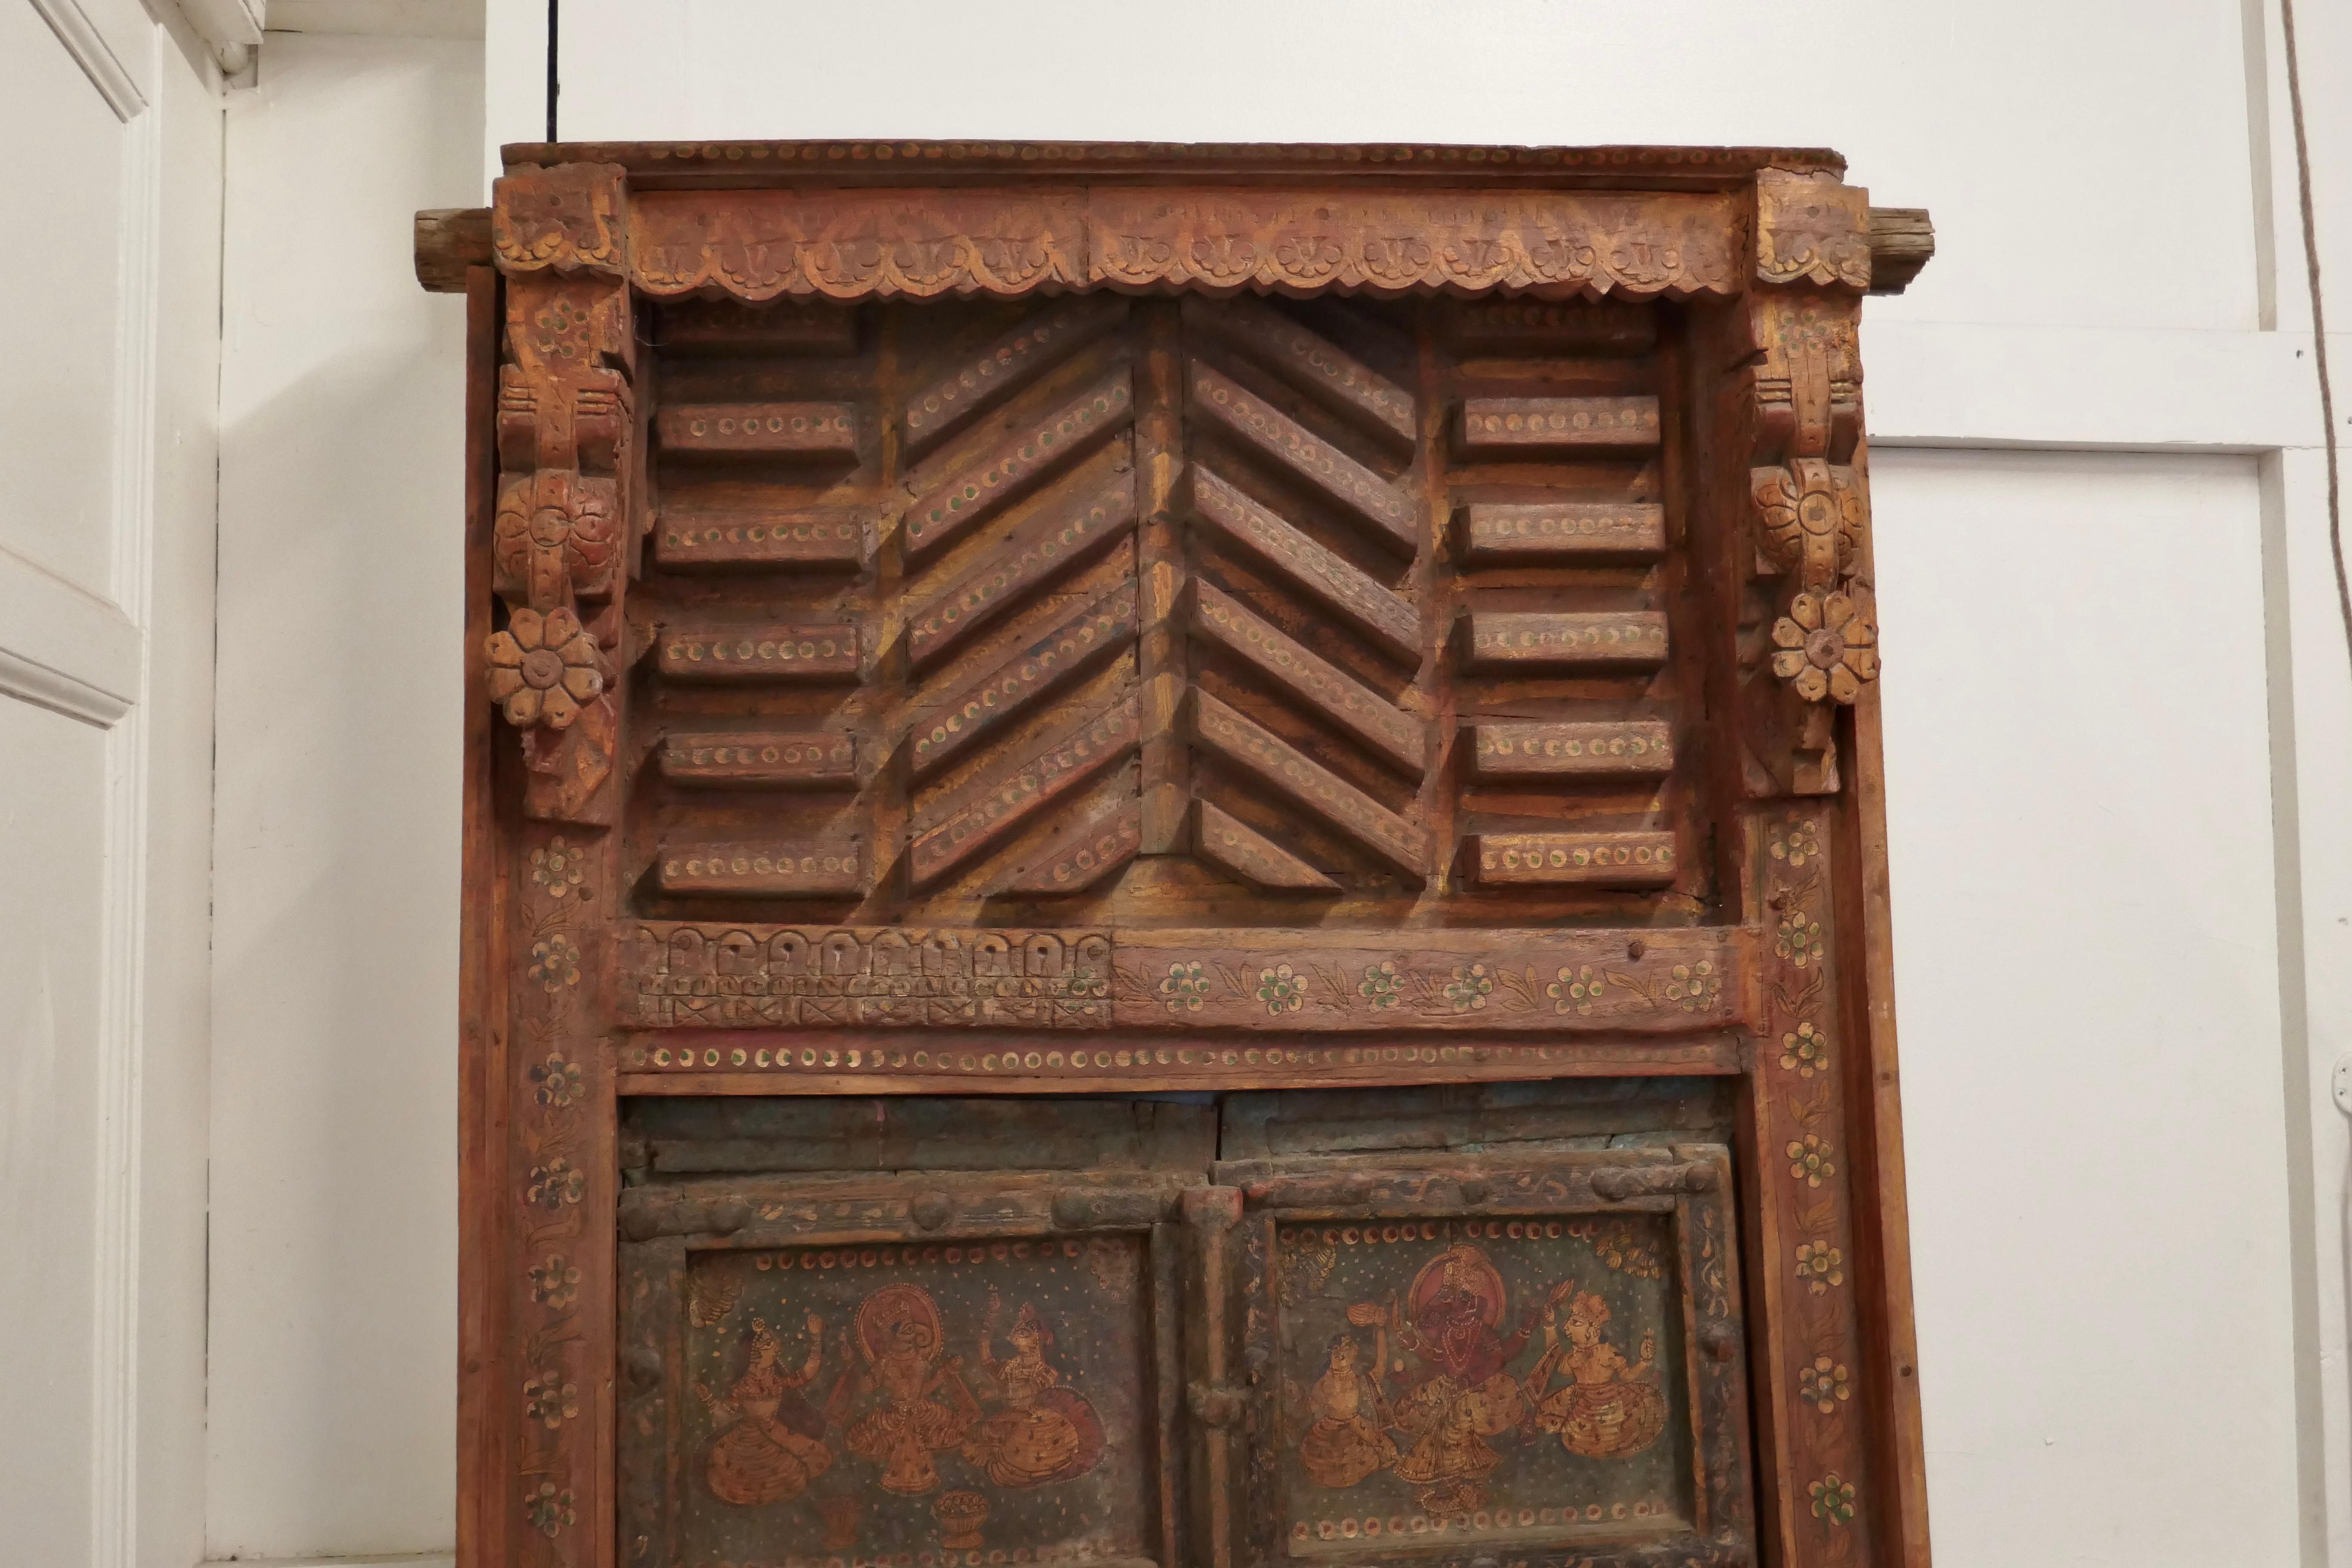 Anglo-indische bemalte Türen im Originalrahmen, Wandkunst

Diese schönen Holztüren sehen fabelhaft an einer Wand als Dekoration oder in einer Türöffnung aus.
Die getäfelten Türen kommen in ihrem ursprünglichen geschnitzten Rahmen, den sie in der